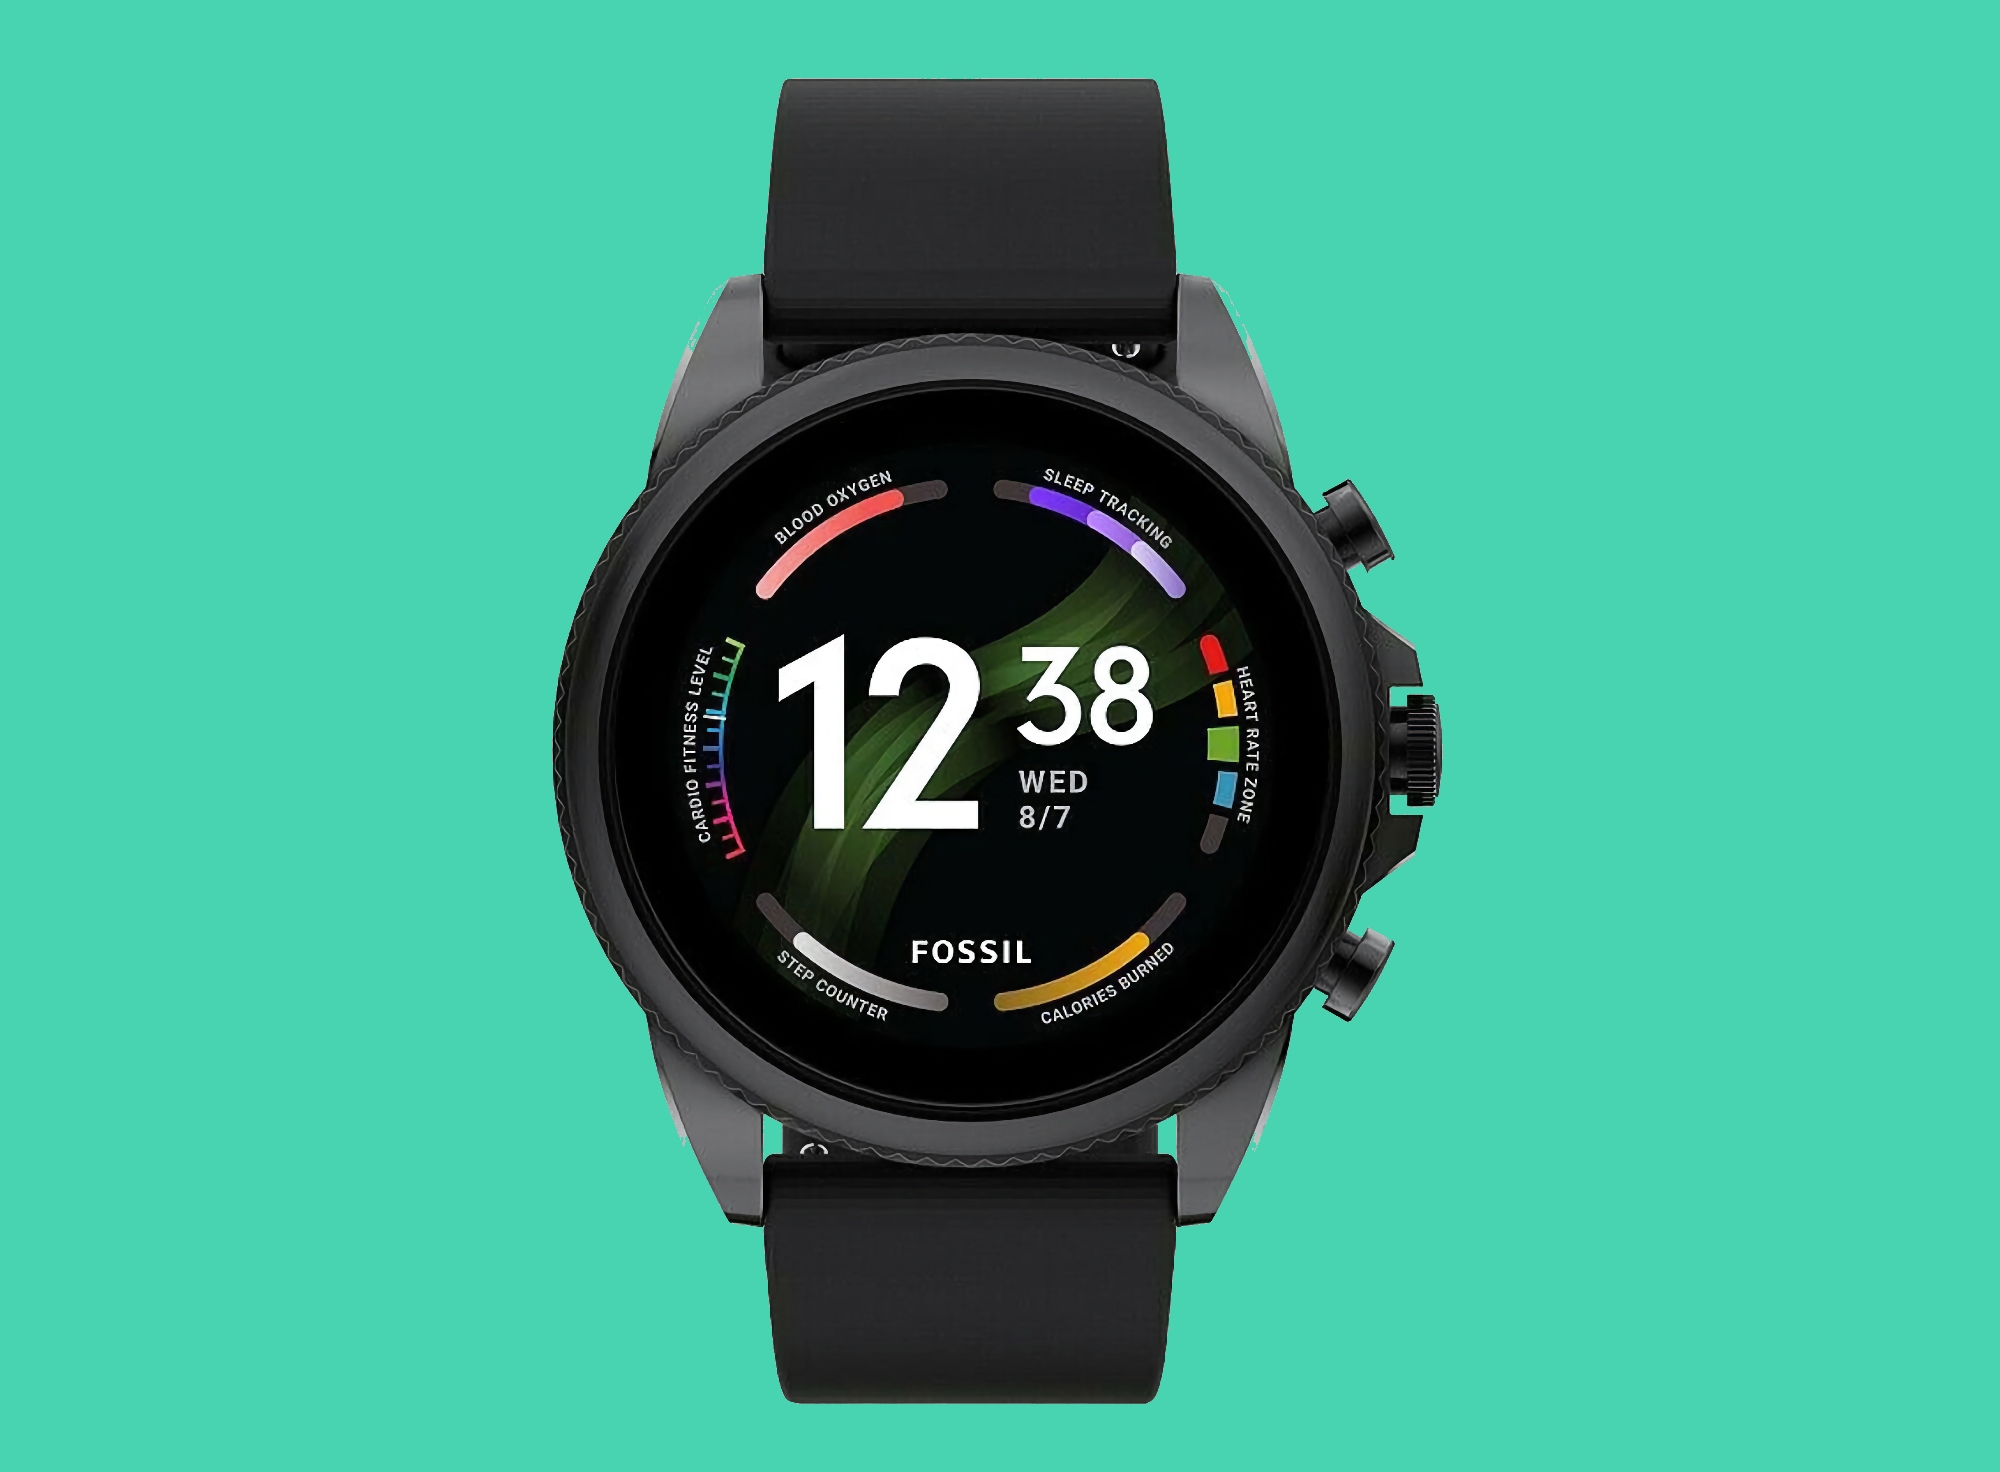 Fossil Gen 6 su Amazon: smartwatch con cassa da 44 mm, NFC e Wear OS a bordo con uno sconto di 151 dollari